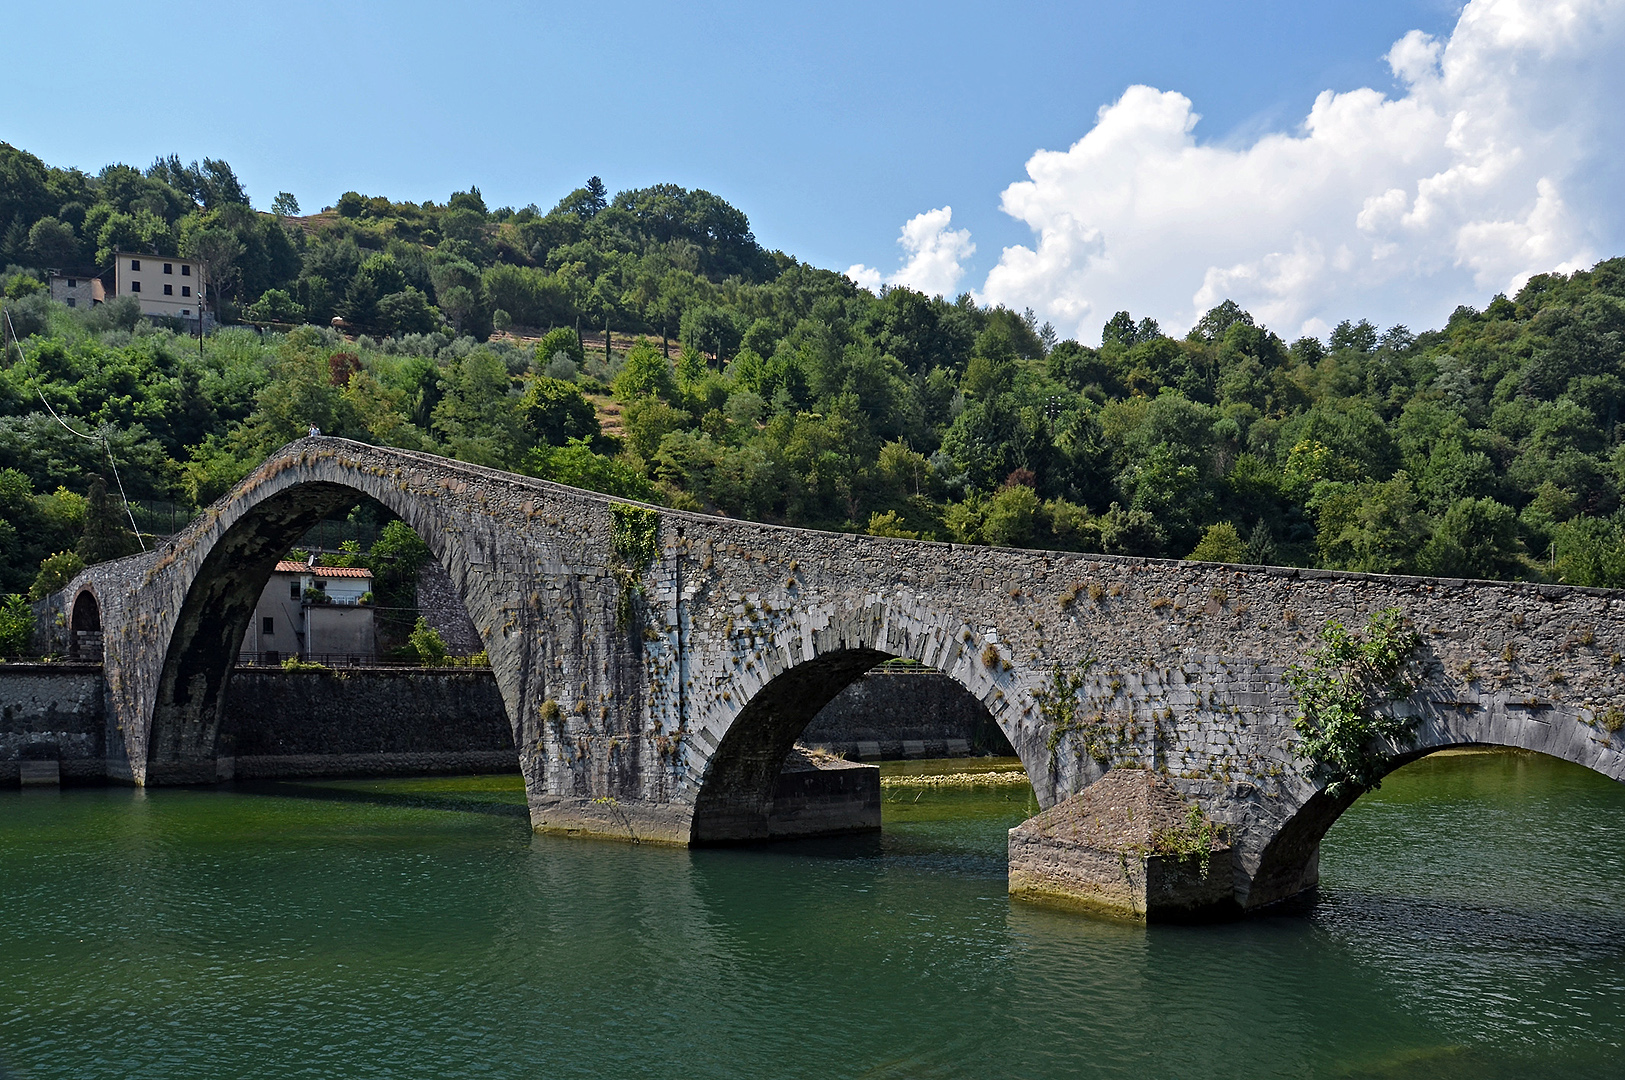 Ponte della Maddalena, Borgo a Mozzano, Itali, Ponte della Maddalena, Borgo a Mozzano, Italy